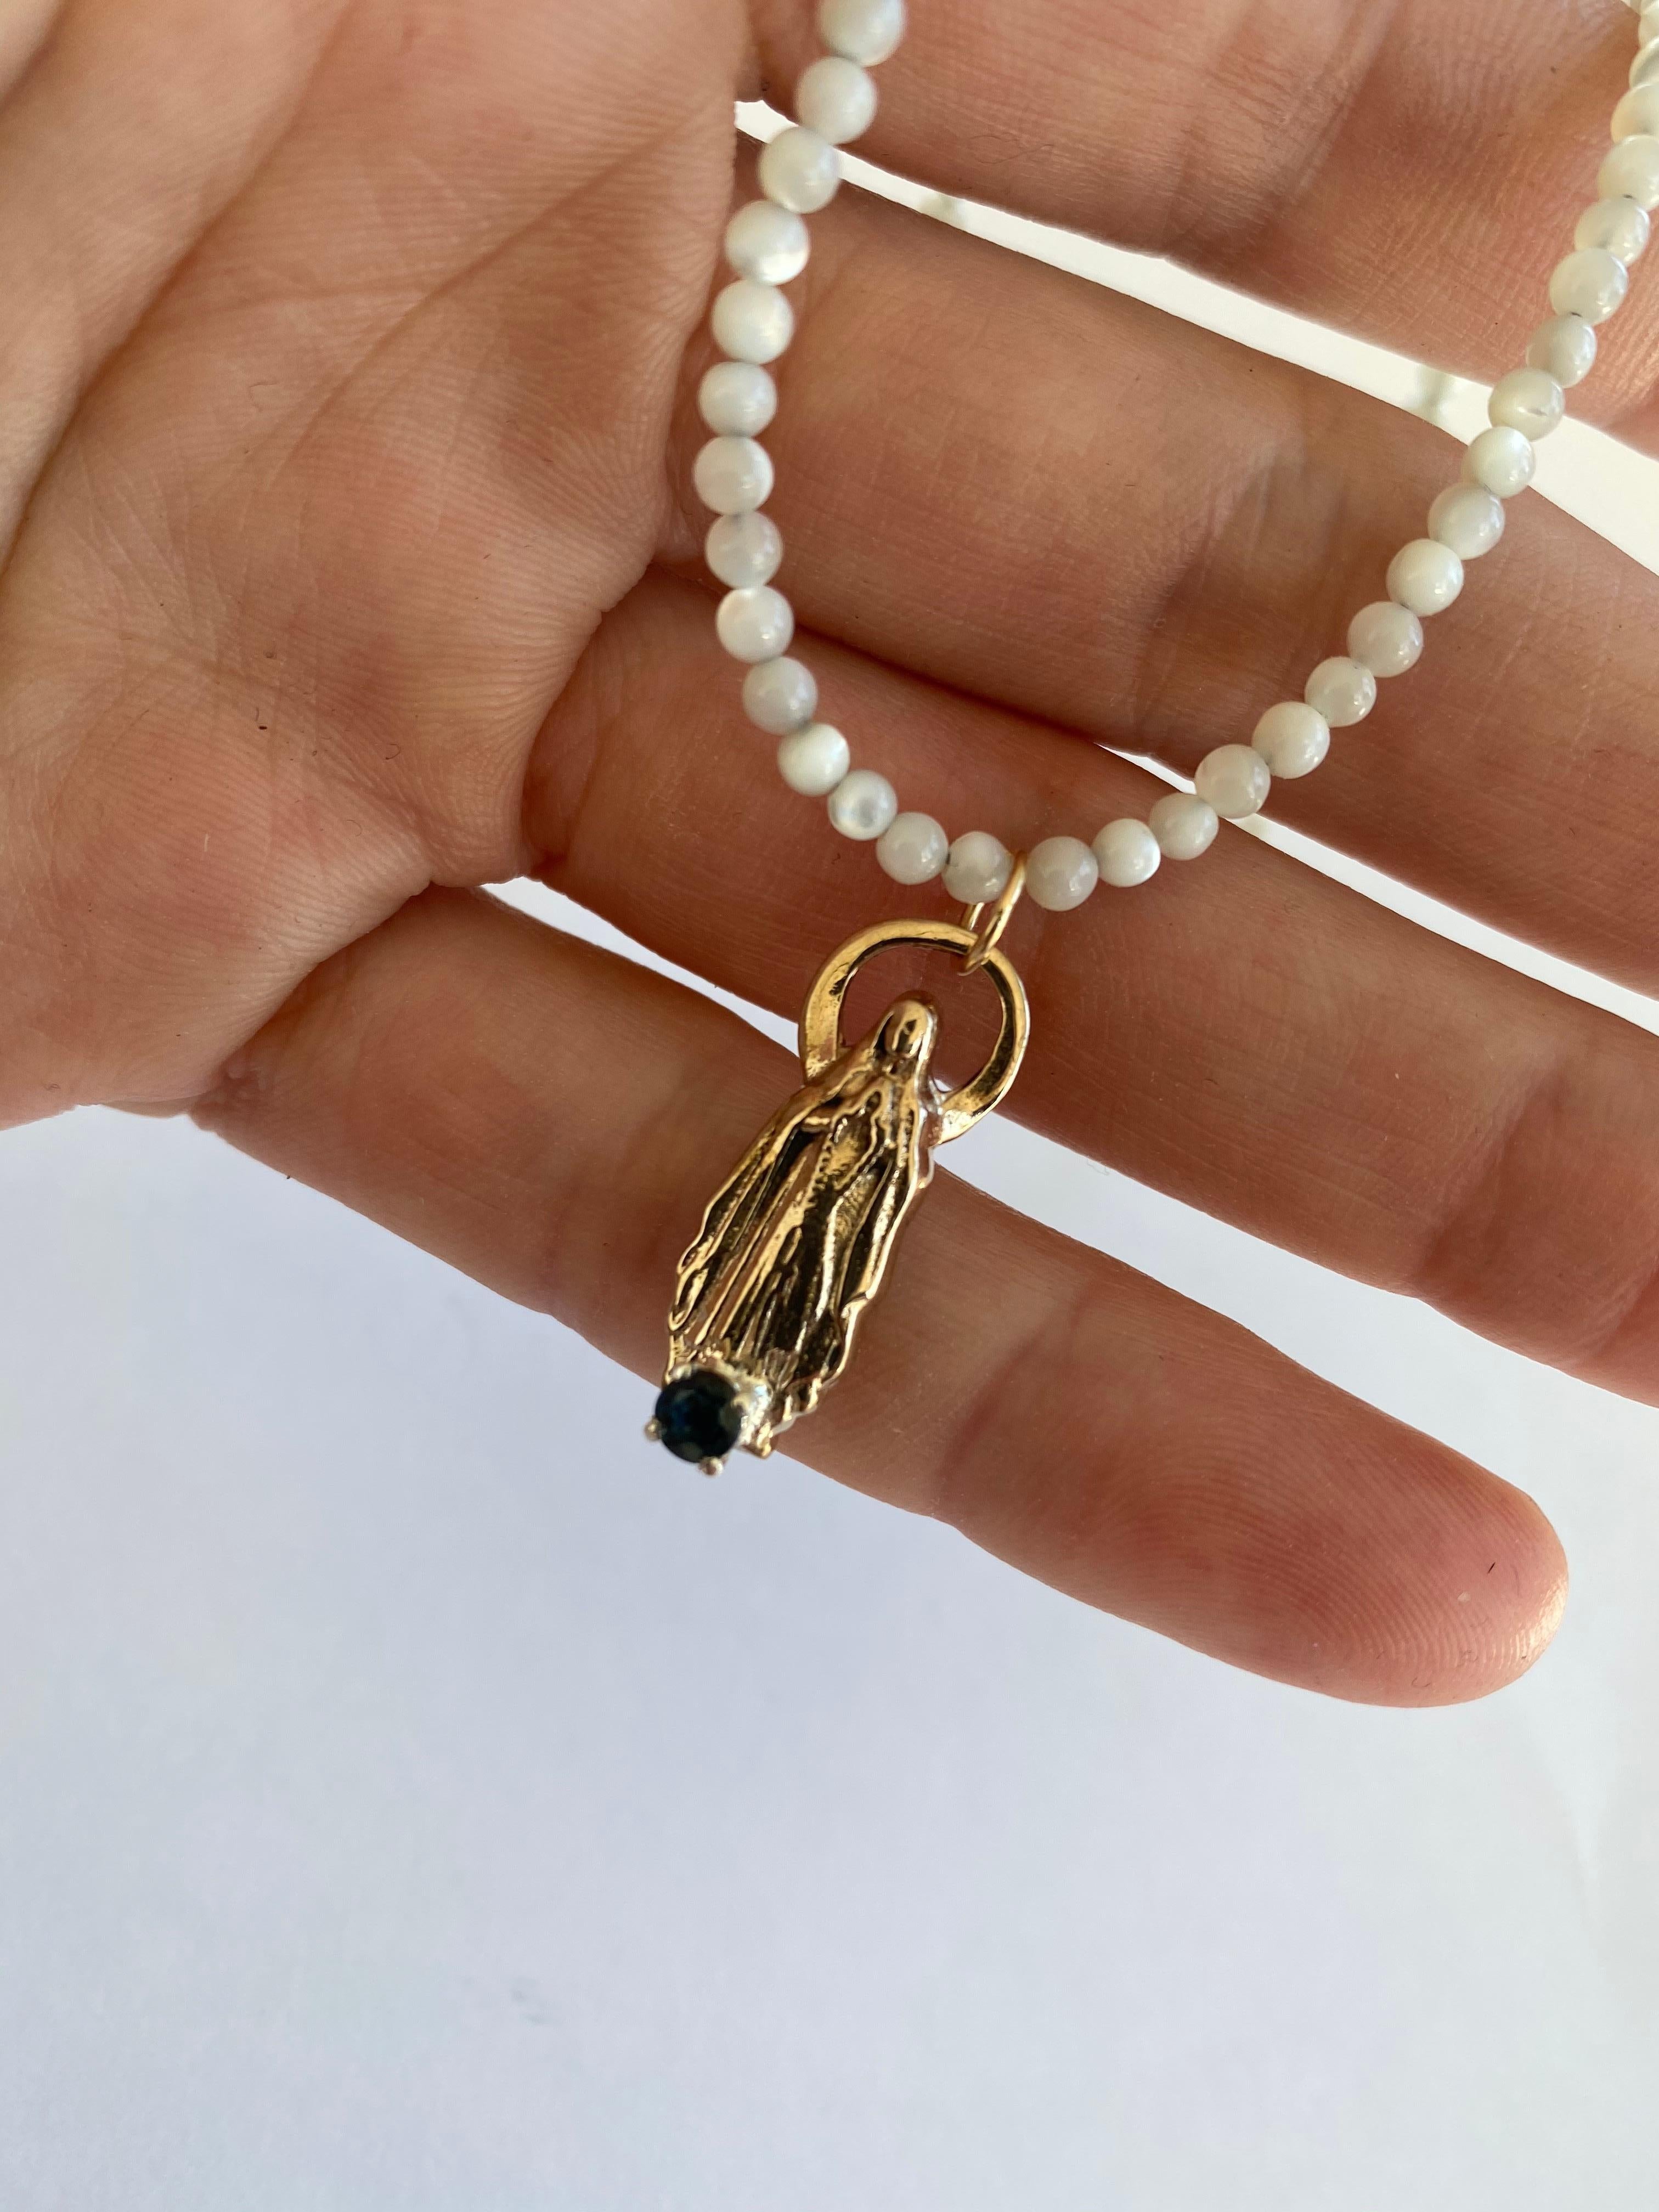 Collier de perles blanches Sapphire Virgin Mary J DAUPHIN

Pièce exclusive avec un pendentif Vierge Marie et un saphir bleu serti dans une griffe en or sur un pendentif Figurine en bronze. Le collier de perles mesure 16 pieds de long.

Les symboles